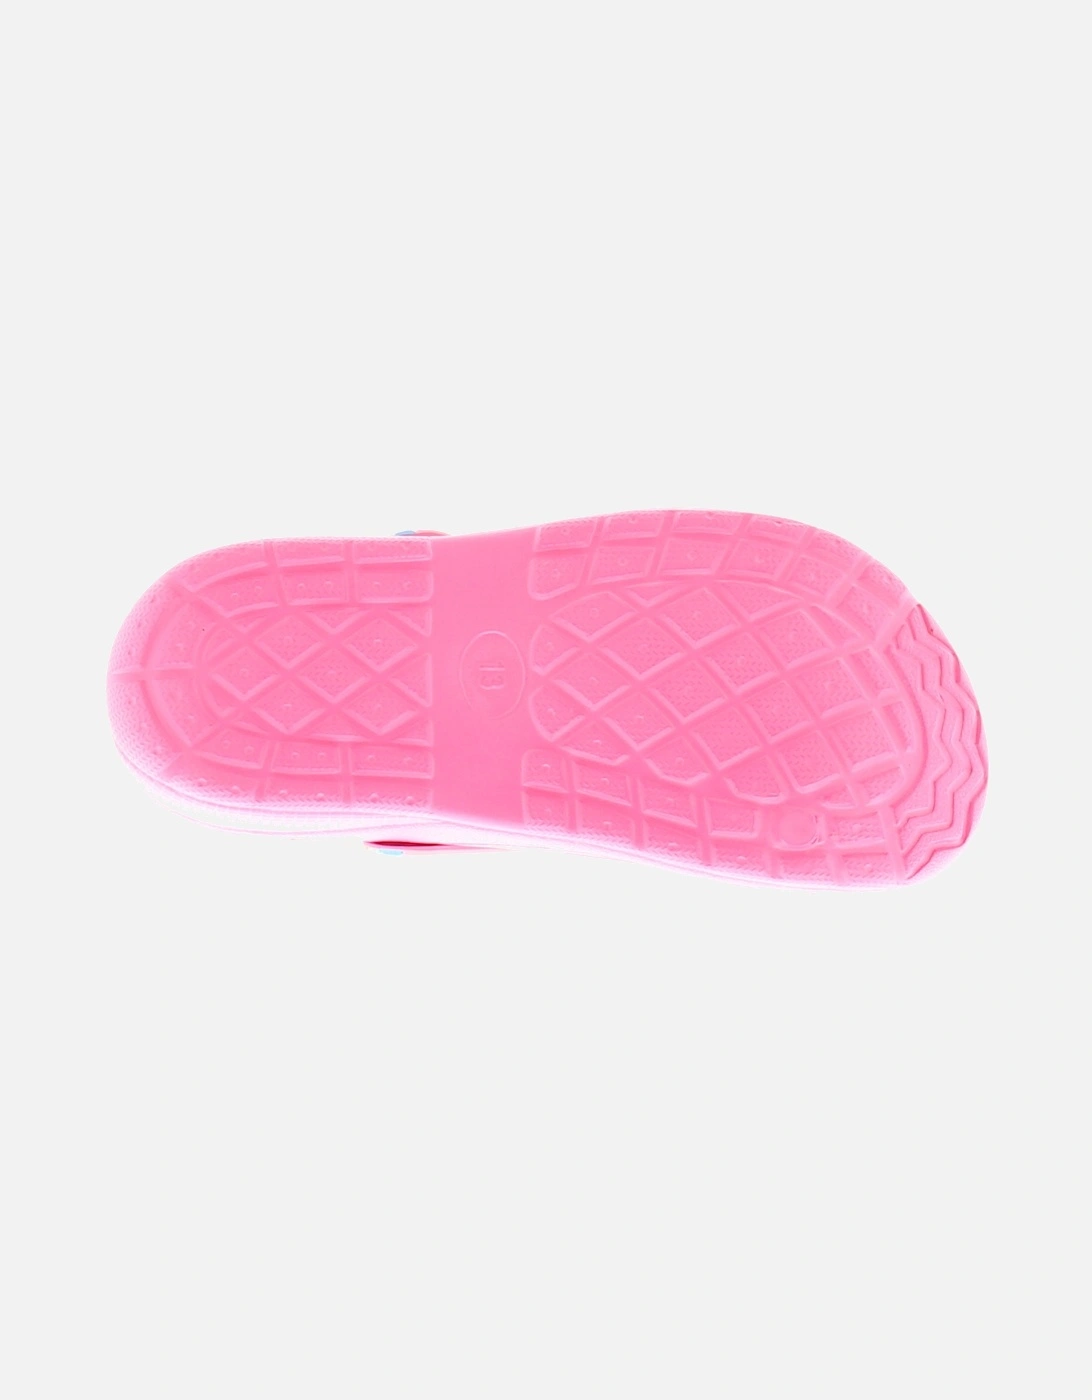 Girls Sandals Clogs Beach Dream pink UK Size